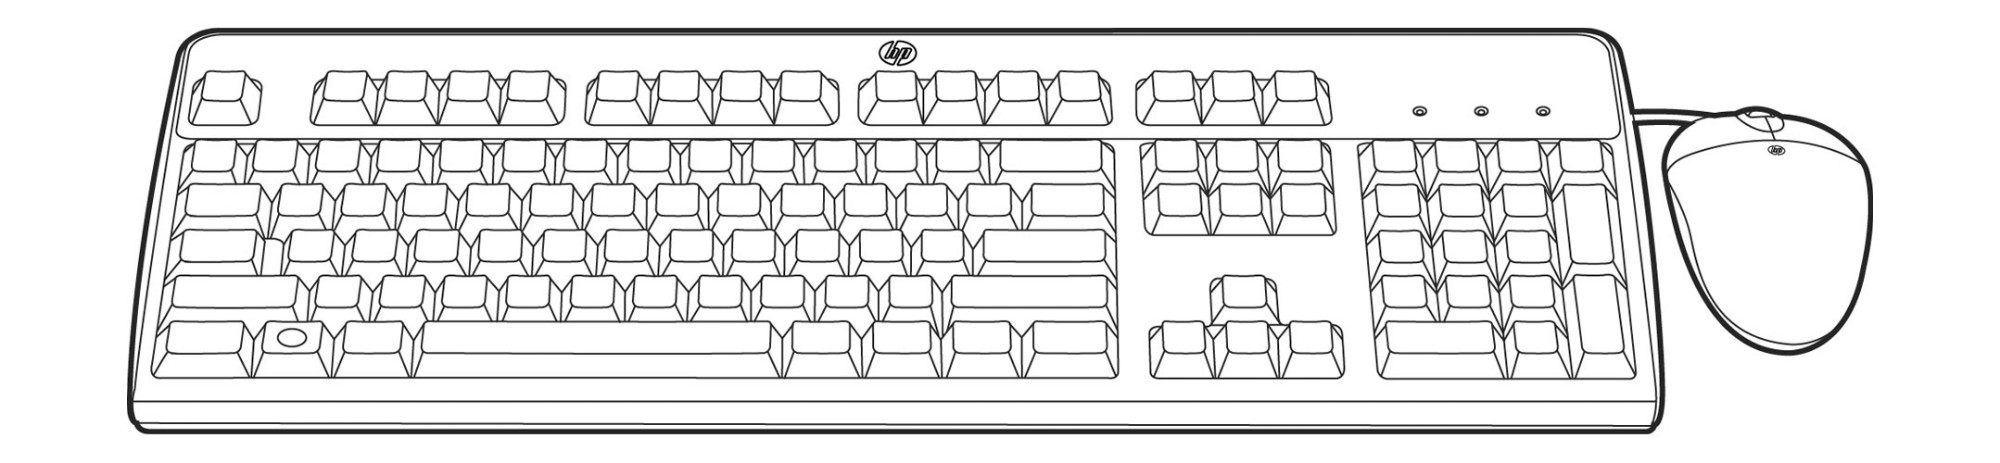 Hewlett Packard Enterprise 638212-B21 keyboard Mouse included USB Arabic Black